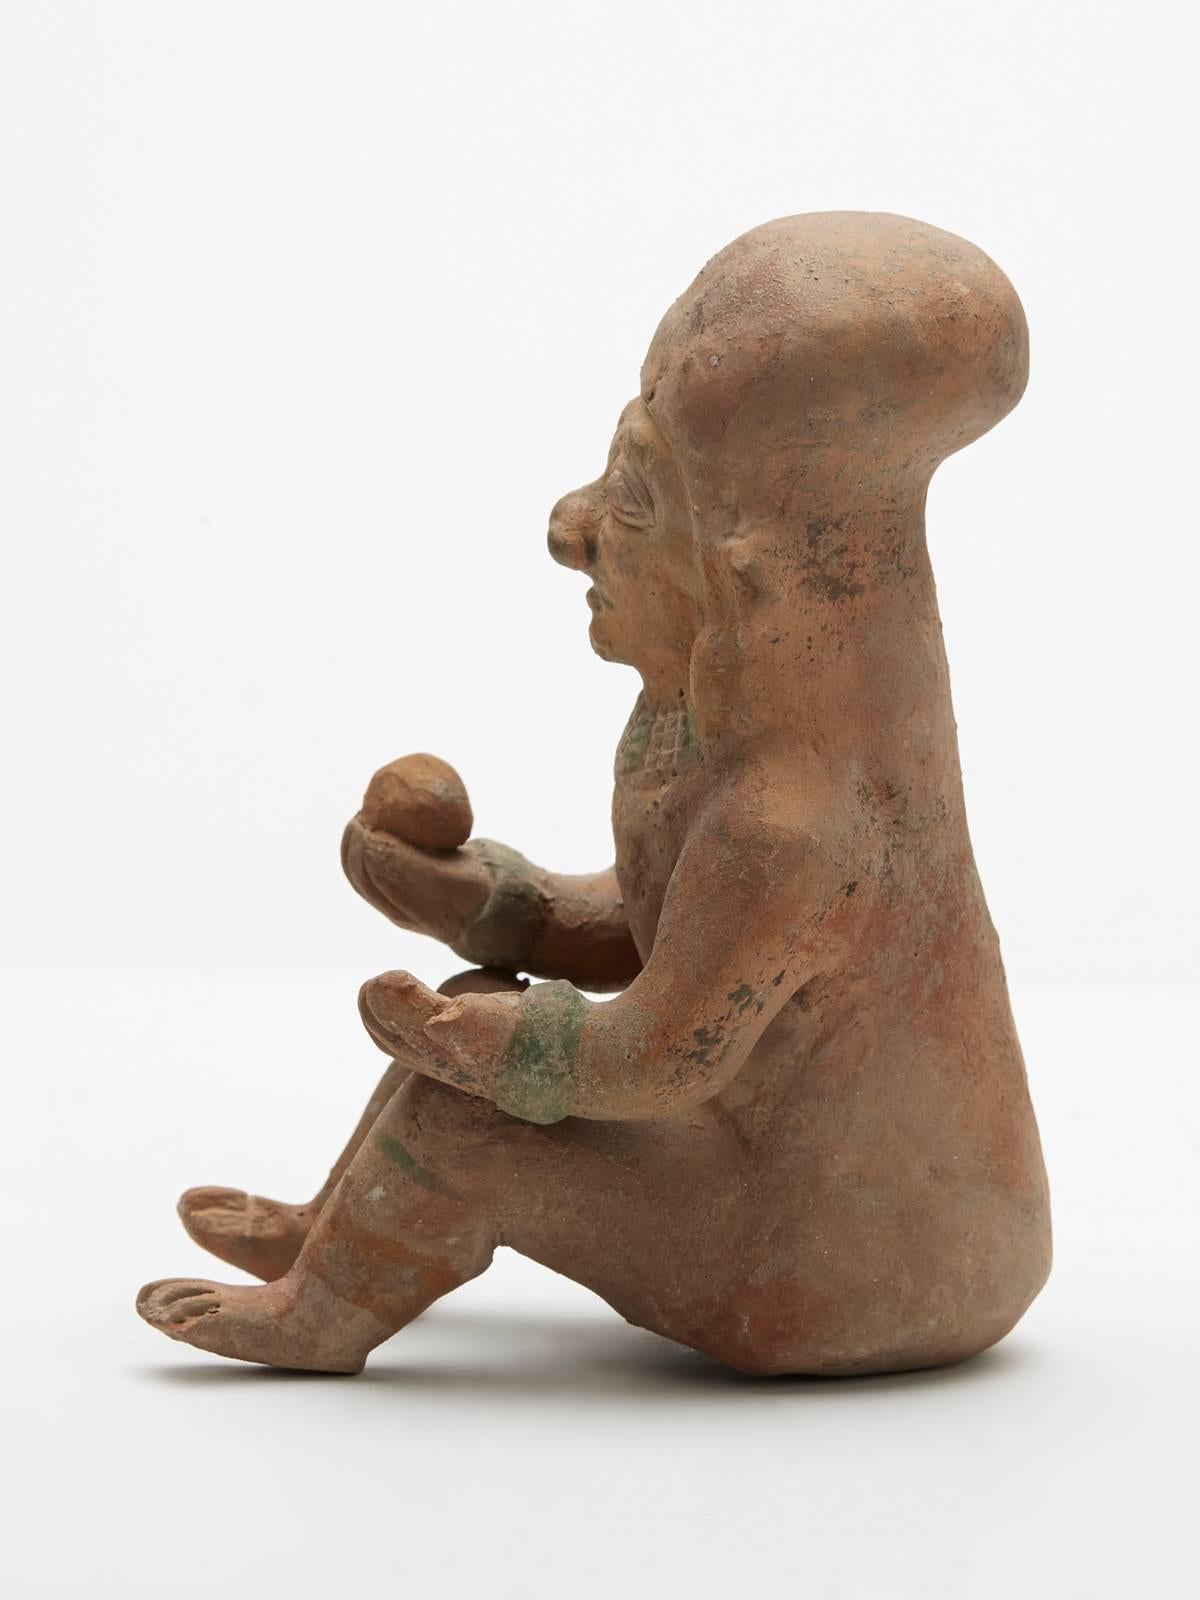 Folk Art Pre Columbian Jamacoaque Pottery Seated Figure 200BC-200AD